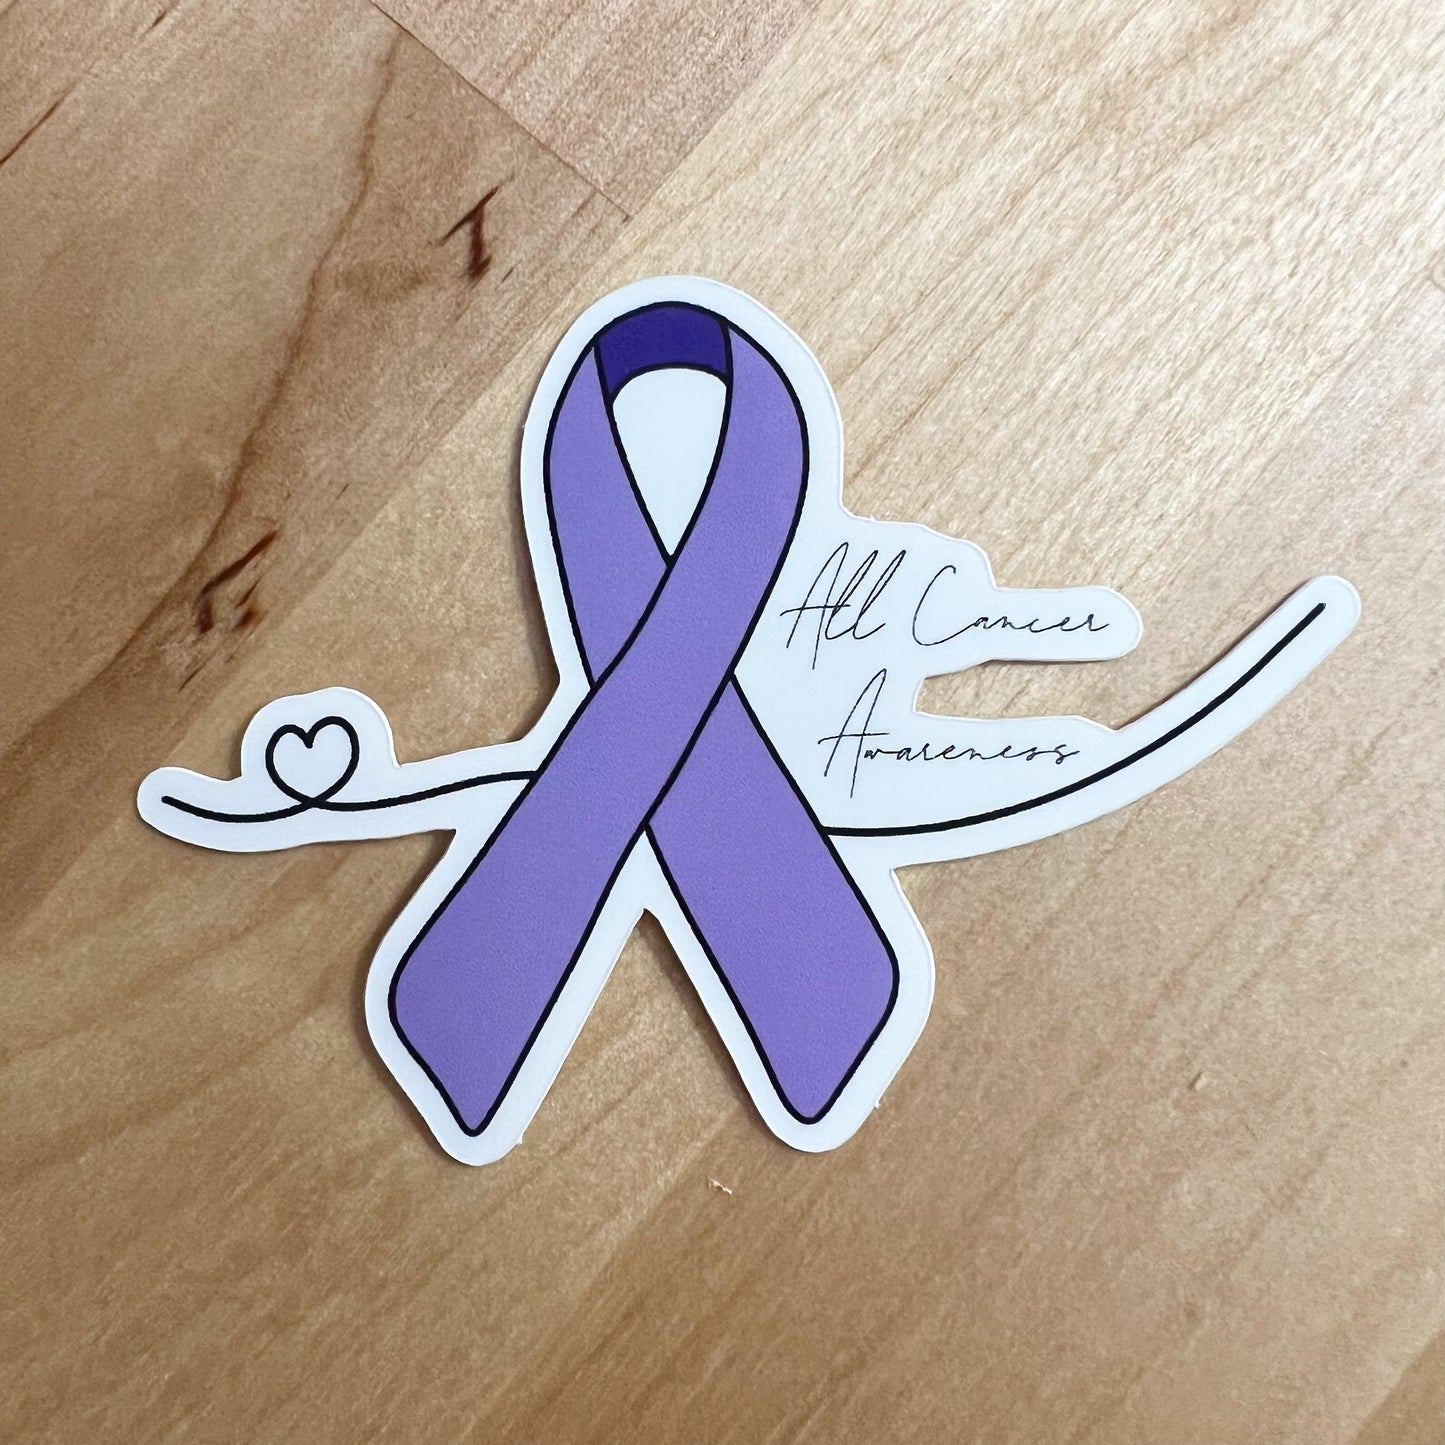 All Cancer Awareness Sticker